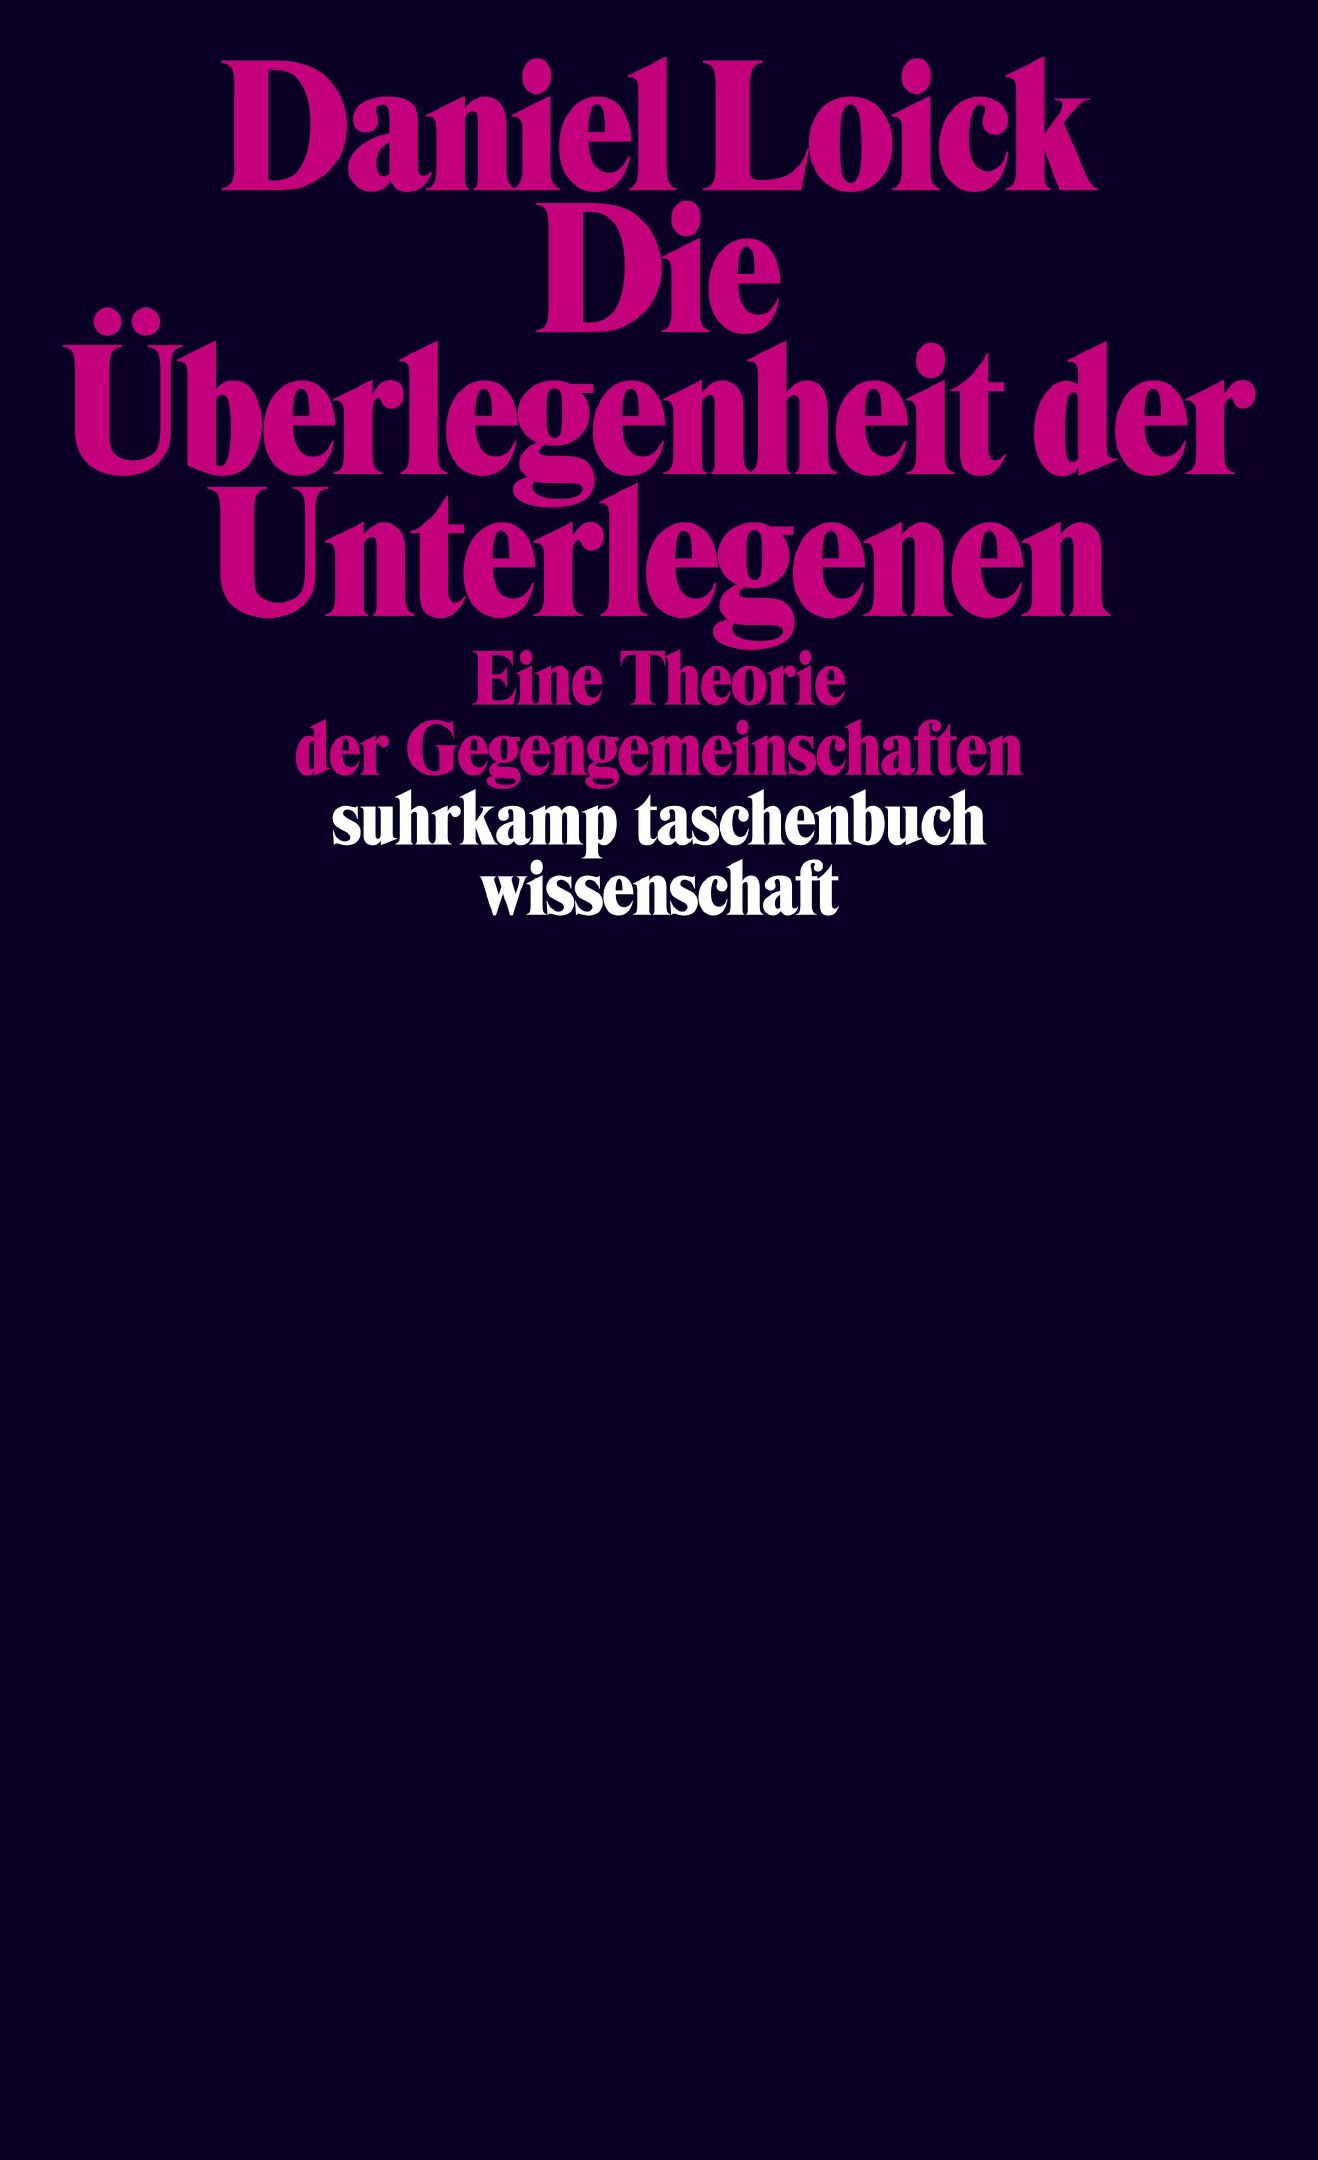 Suhrkamp Taschenbuch Loick Die Ueberlegenheit der Unterlegenen Cover